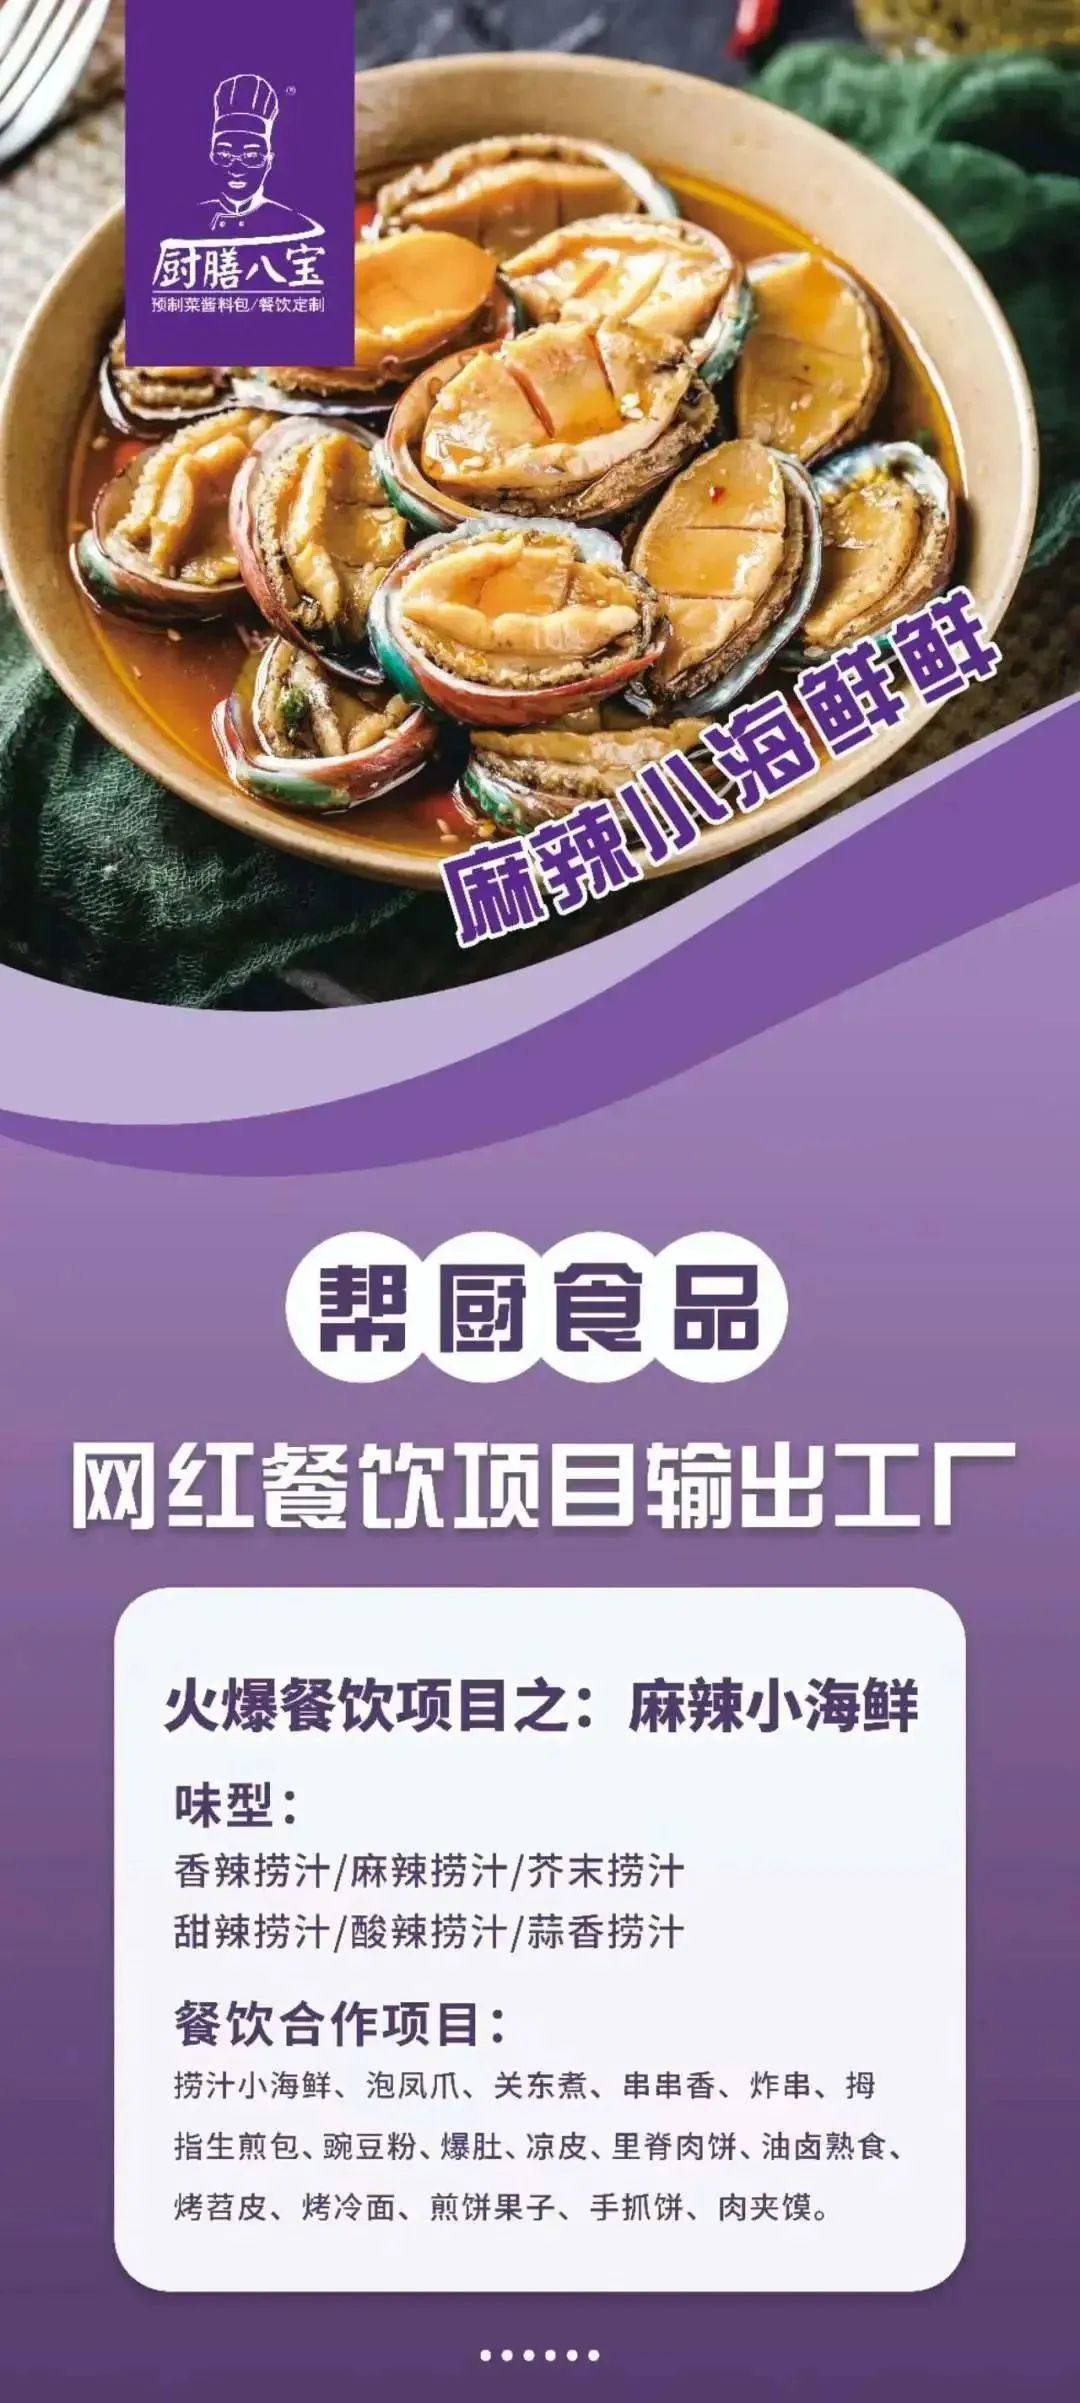 展商推介丨青岛帮厨食品有限公司将携新产品亮相2023北京餐博会(图7)